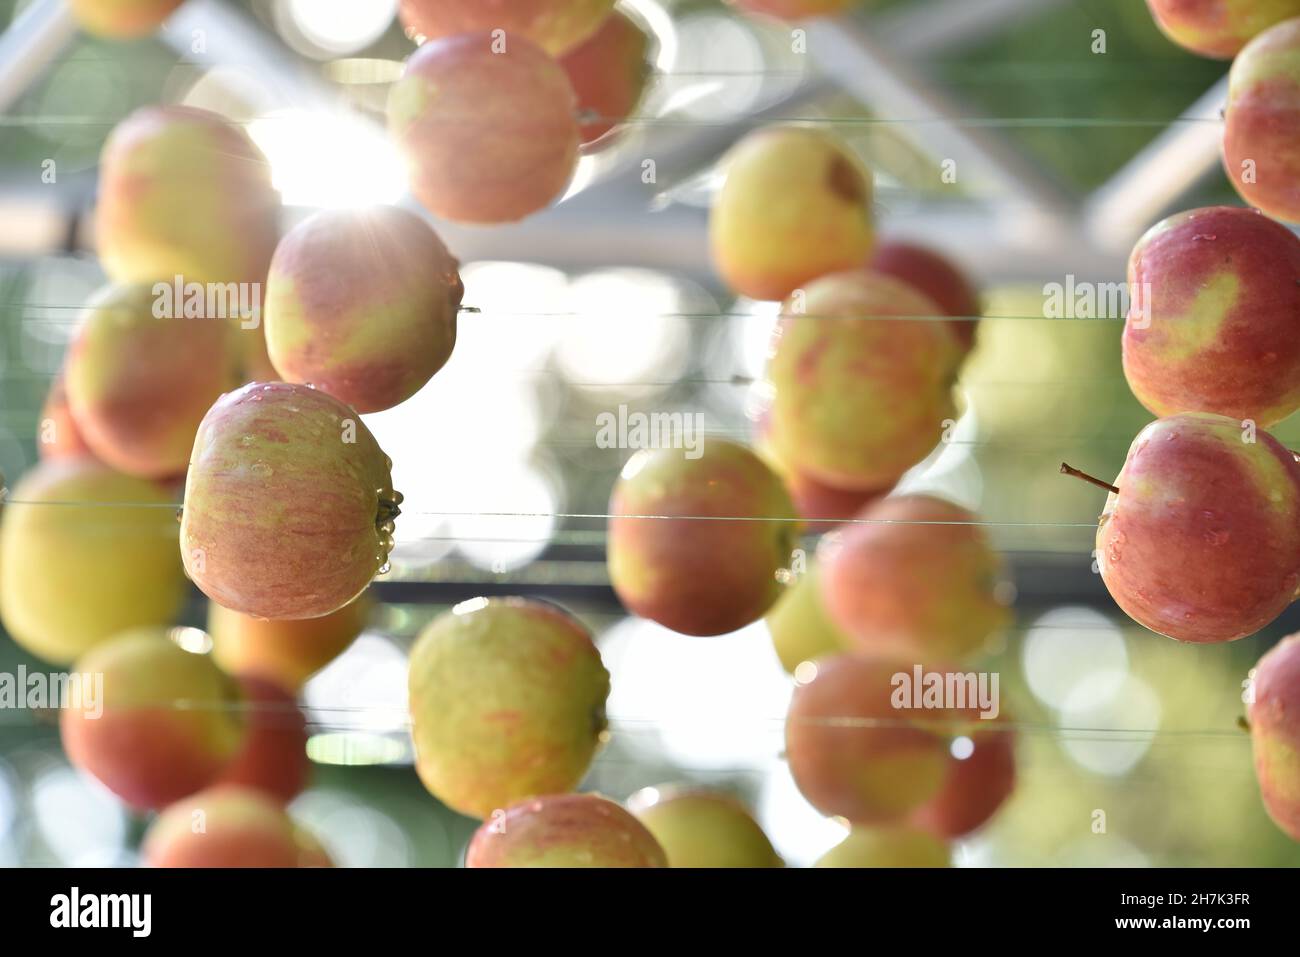 Dekoration bestehend aus reifen Äpfeln, die am Seil hängen, arrangiert für die Open-Air-Veranstaltung Stockfoto